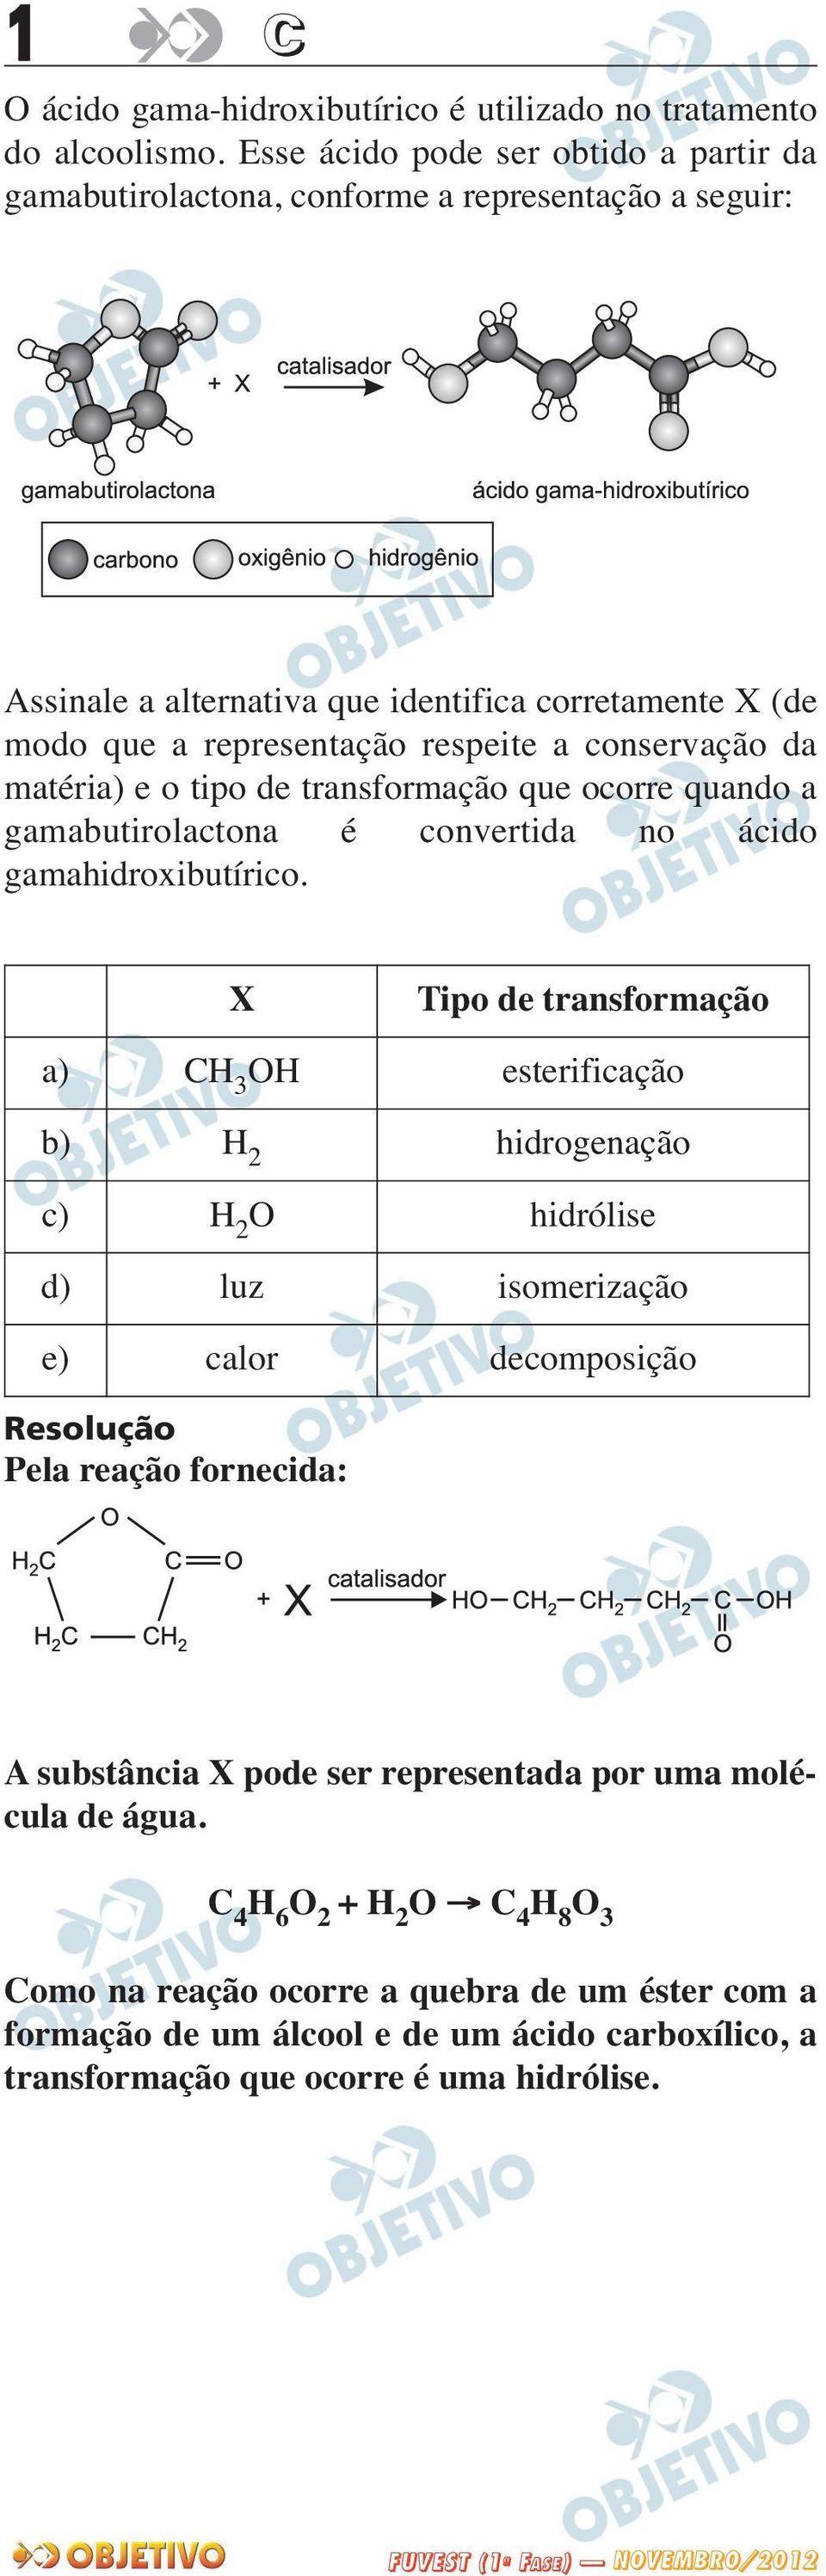 conservação da matéria) e o tipo de transformação que ocorre quando a gamabutirolactona é convertida no ácido gamahidroxibutírico.